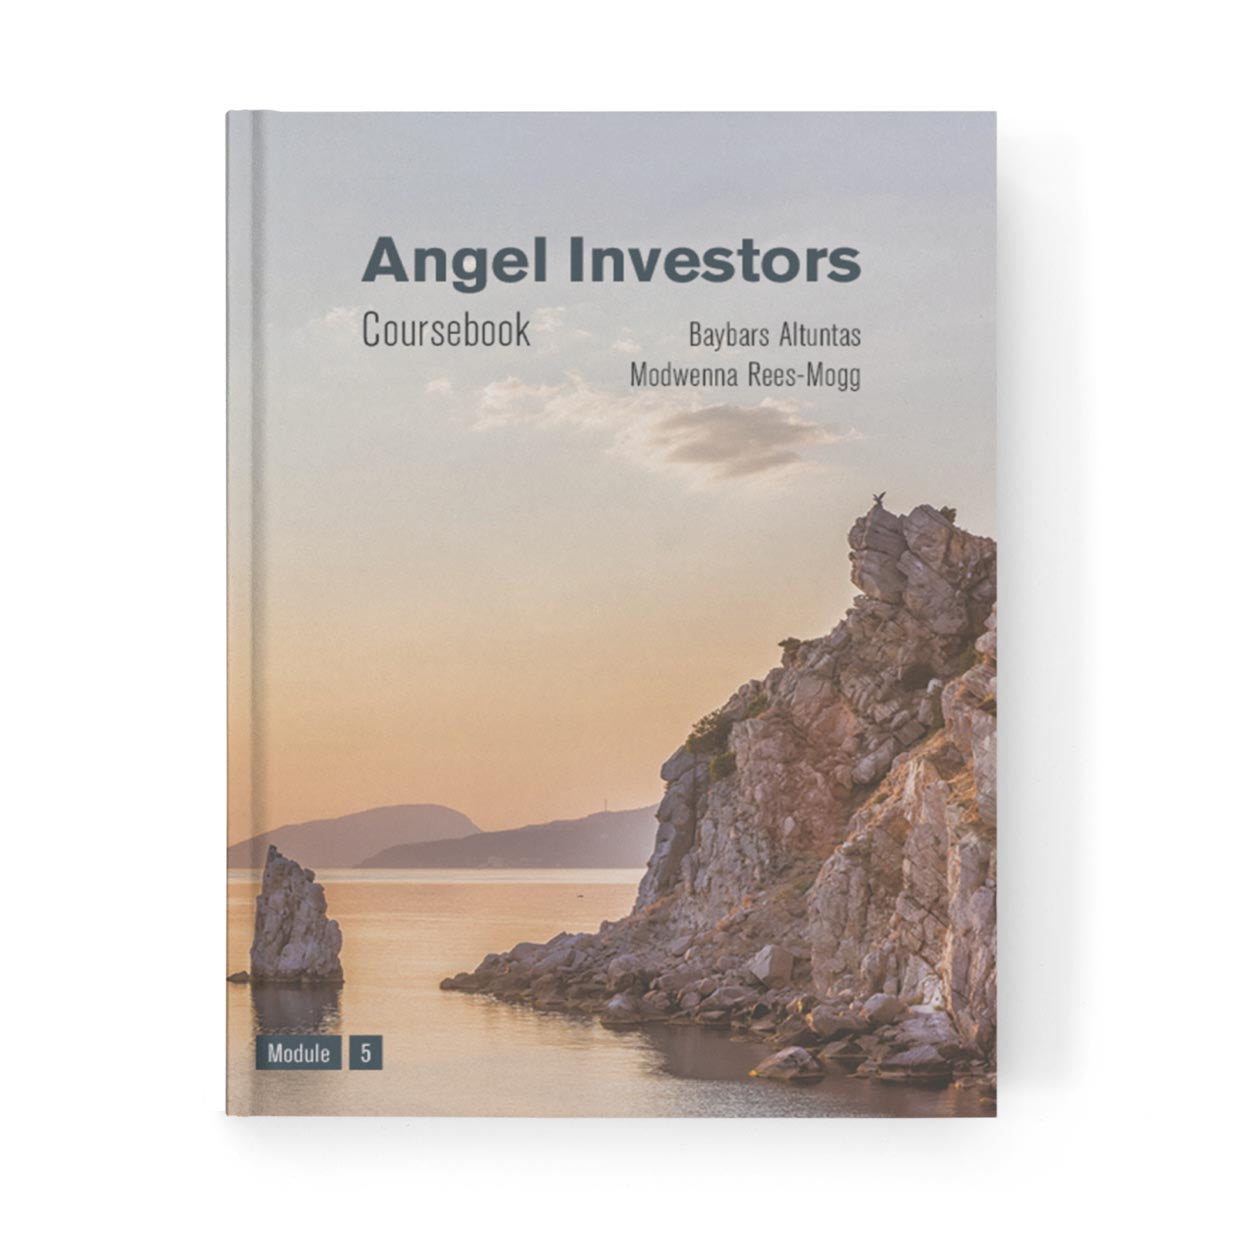 Angel Investors Coursebook